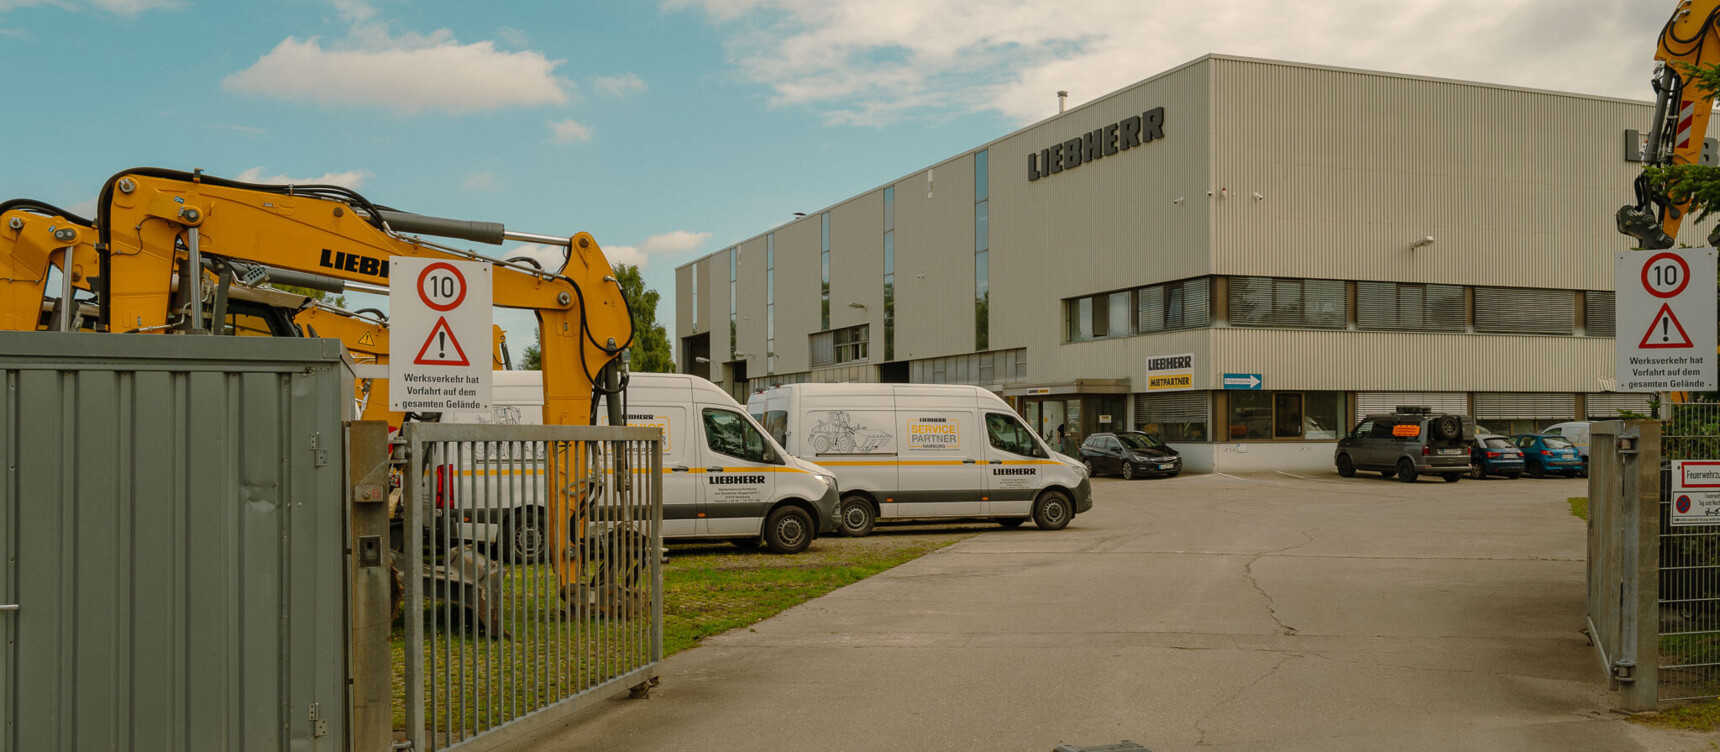 Firmengelände der Liebherr Mietpartner GmbH im Gewerbegebiet östliches Harburg